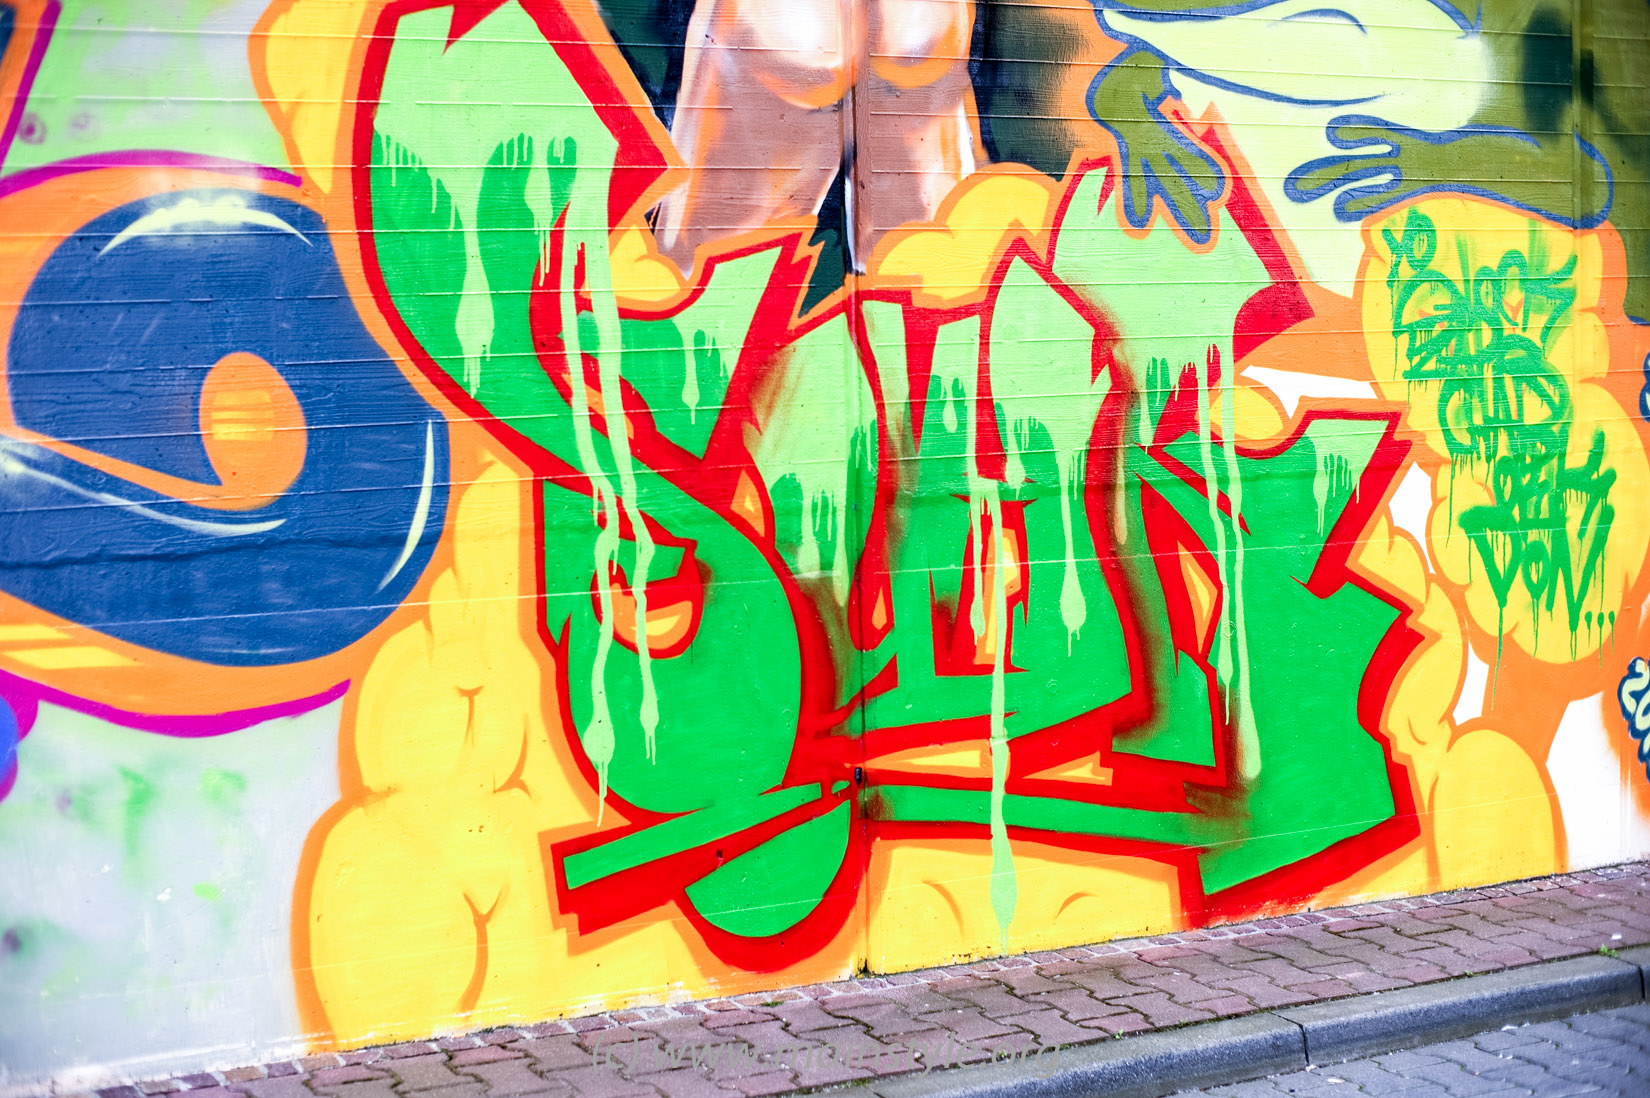 Frankfurt-Höchst_Graffiti_Süwag-Wall_2012 (35 von 35)